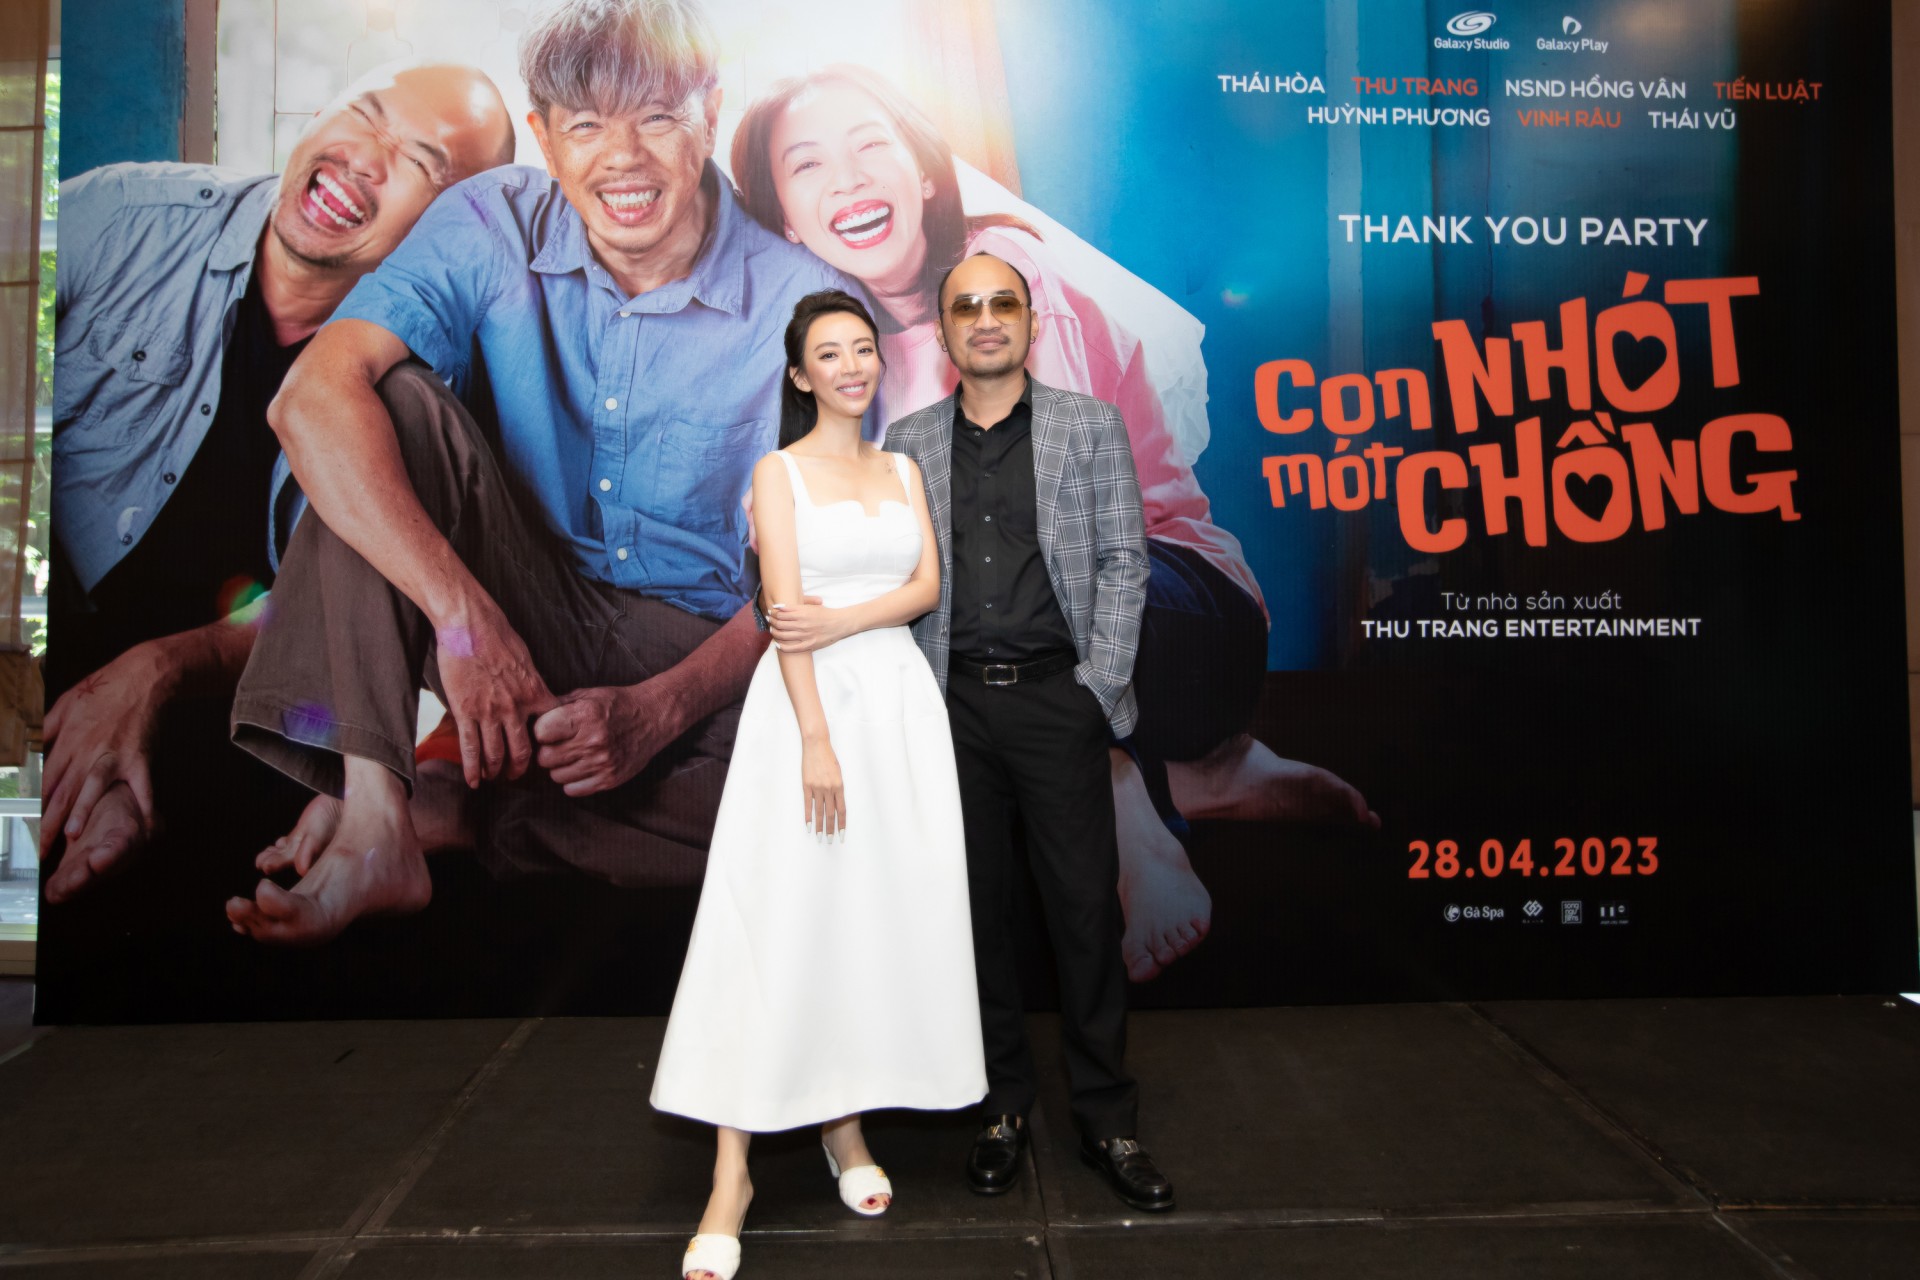 Văn Mai Hương hát nhạc phim 'Con Nhót mót chồng'